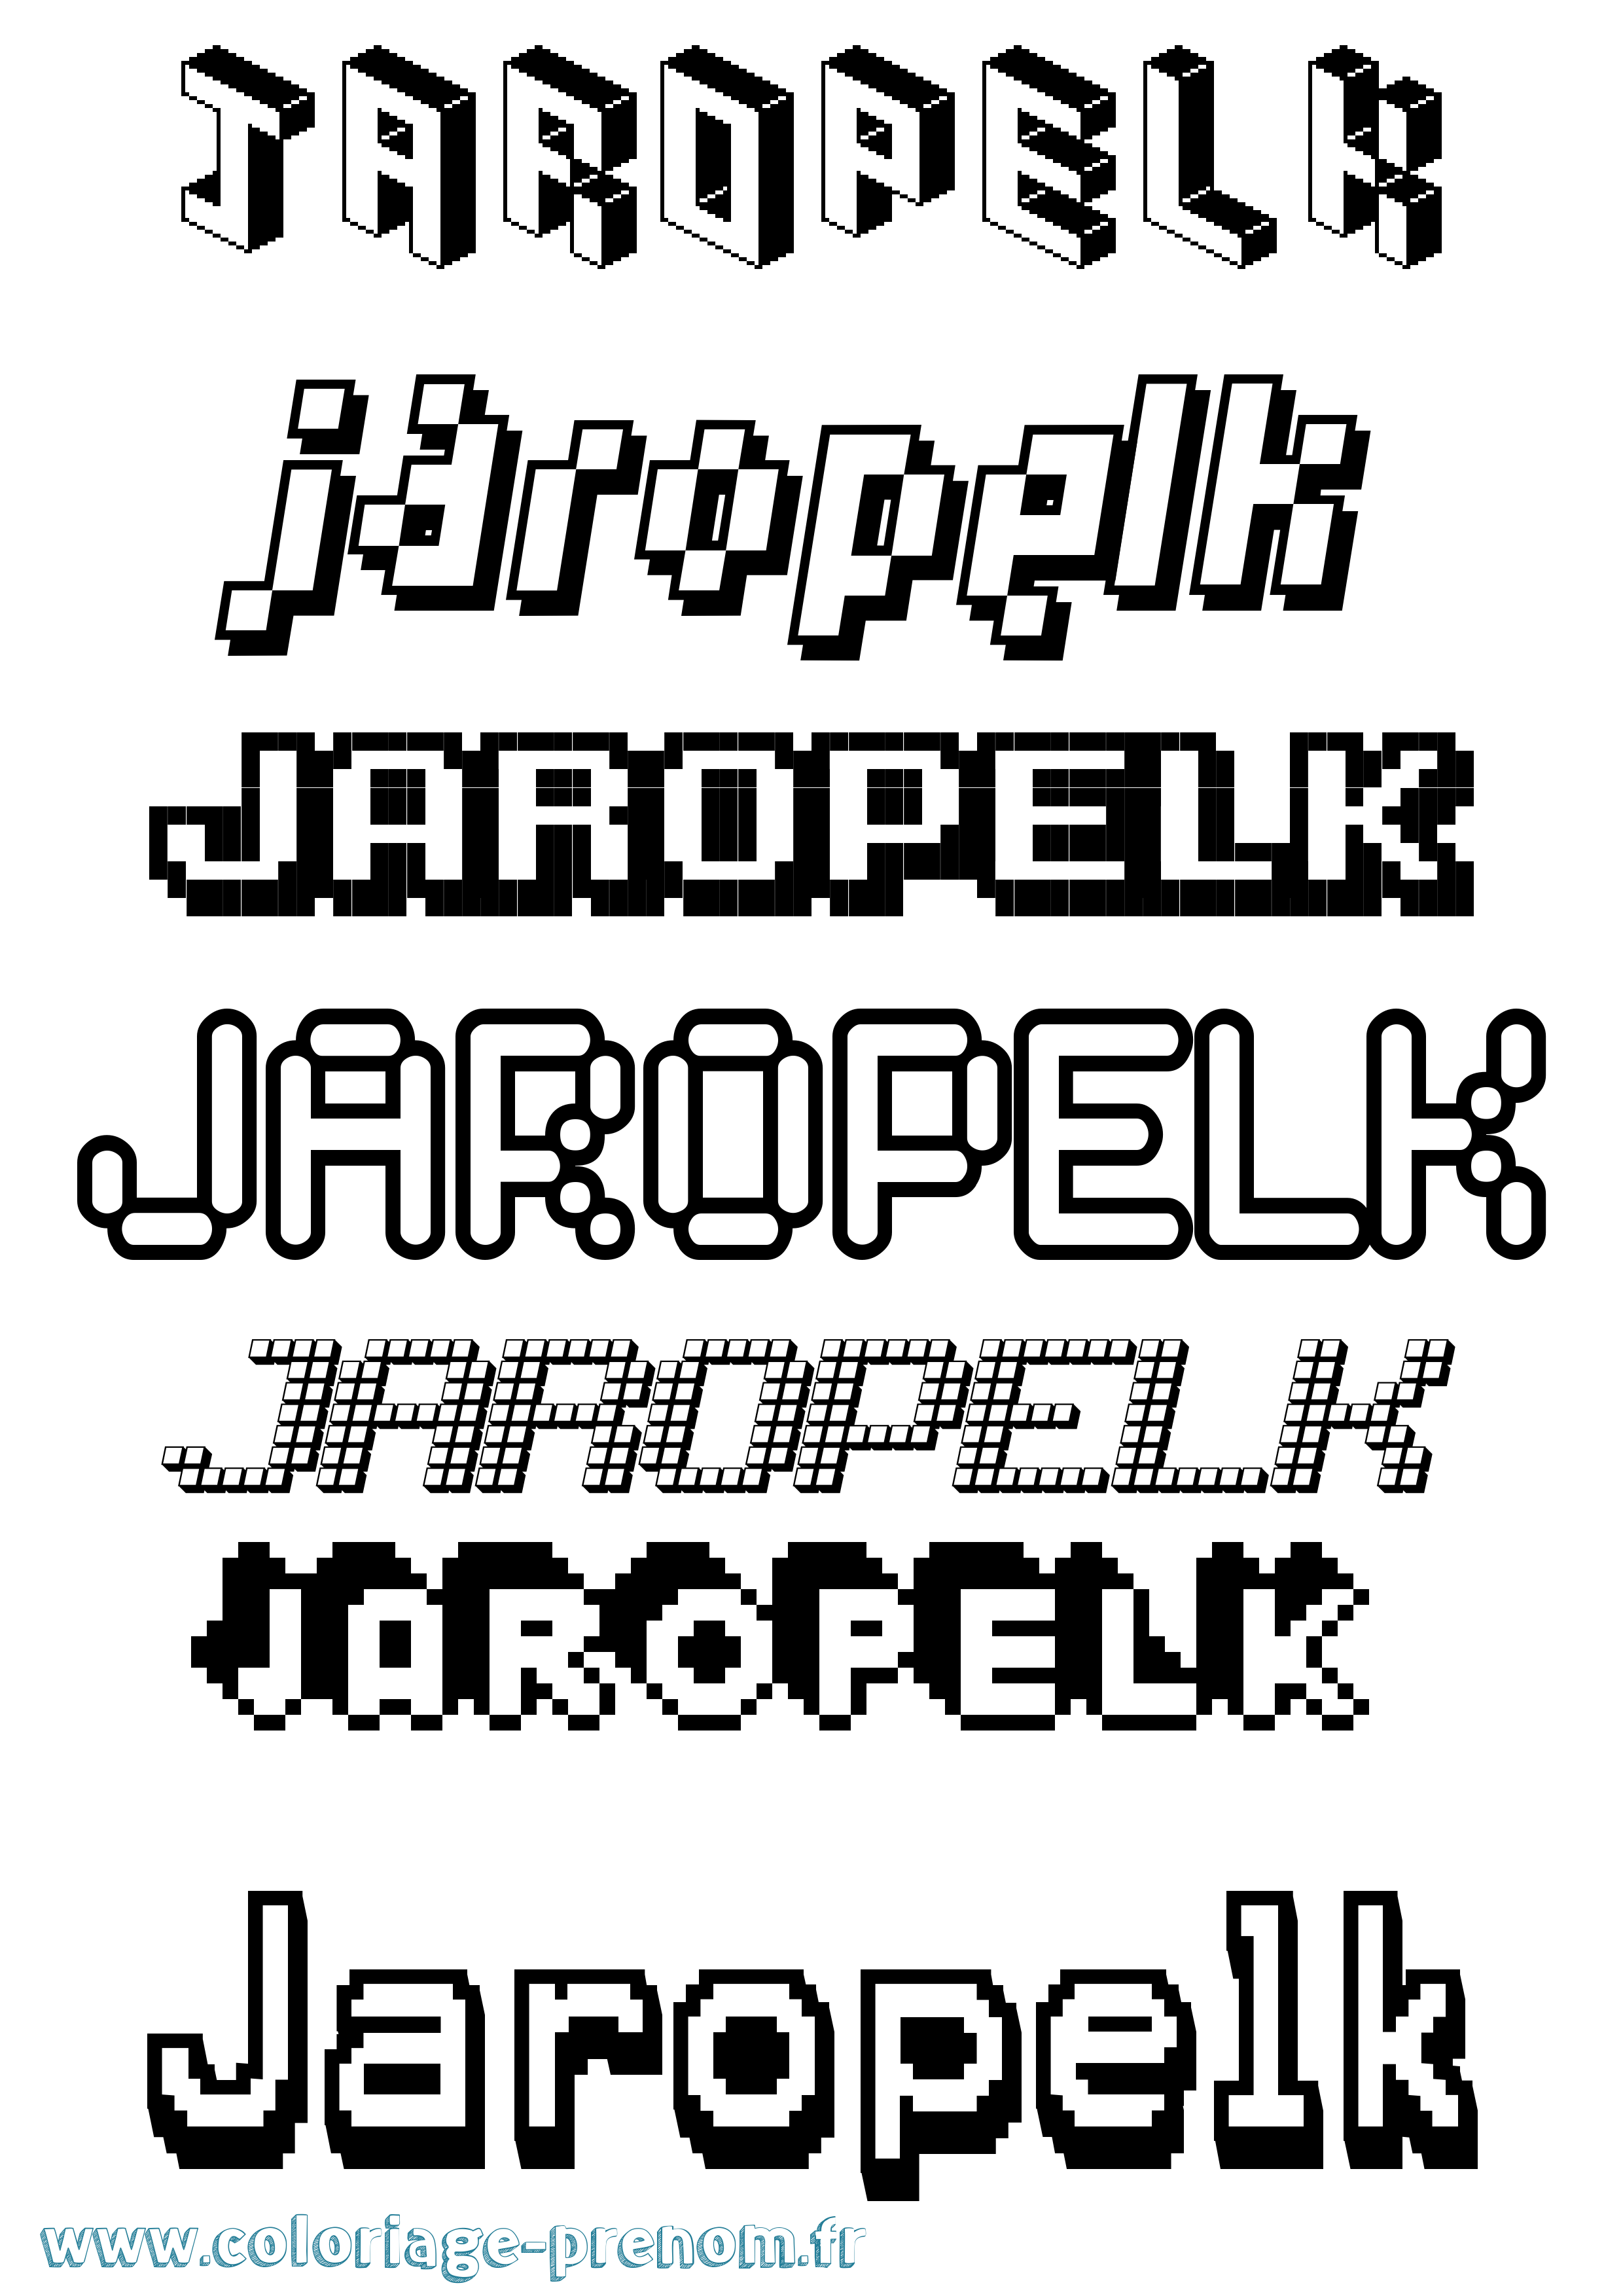 Coloriage prénom Jaropelk Pixel